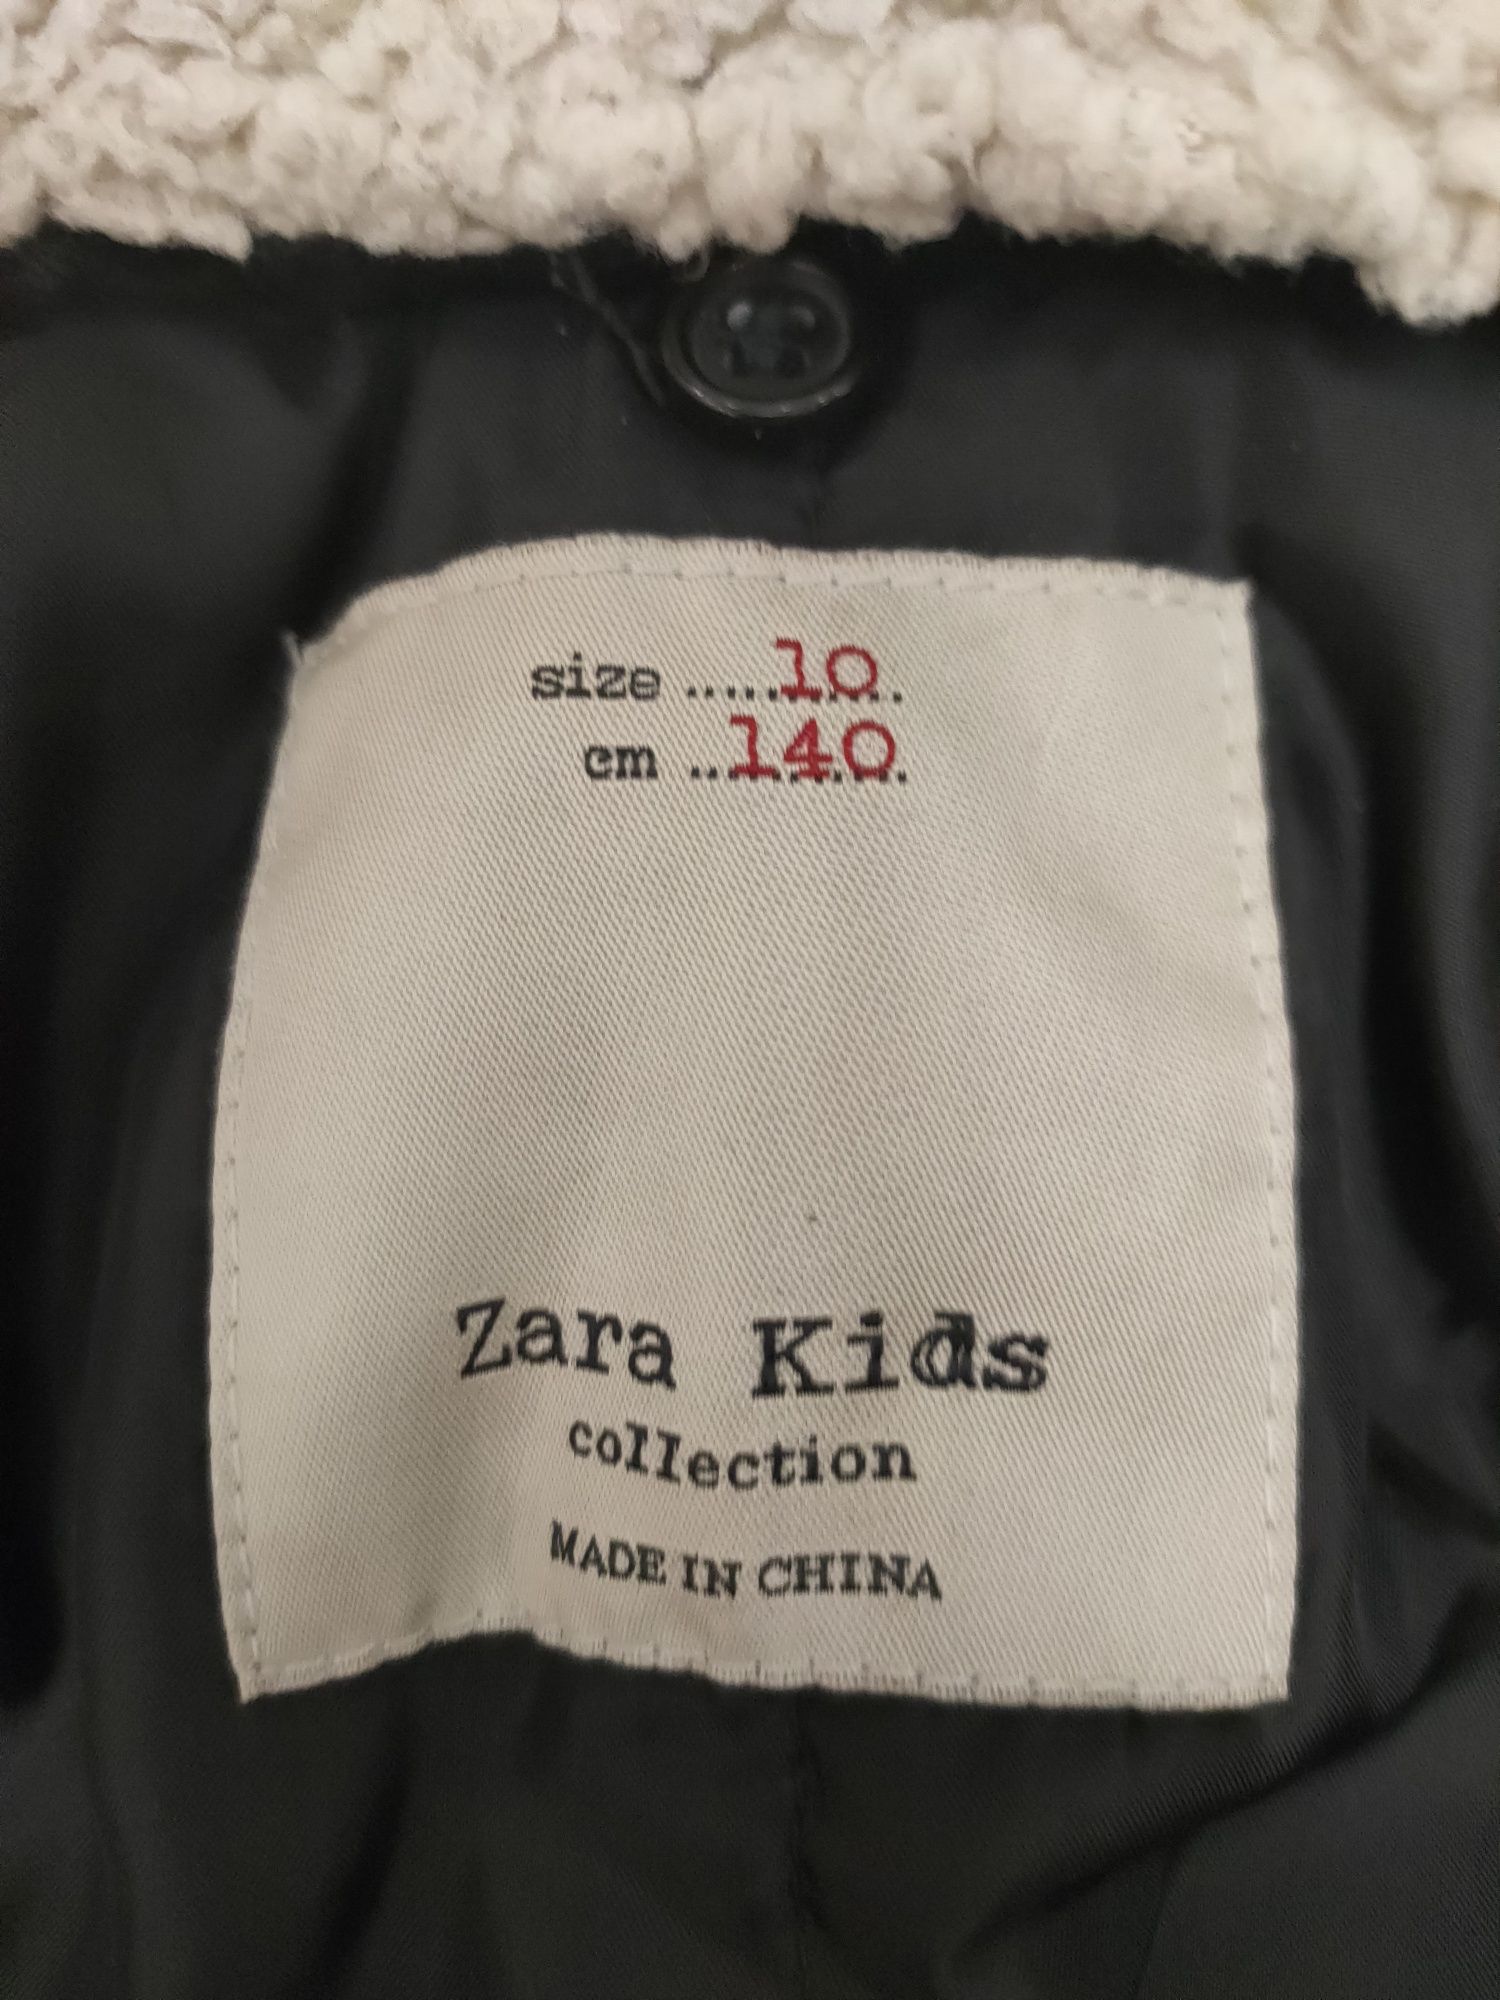 Кожана куртка, бомбер Zara, розмір 140